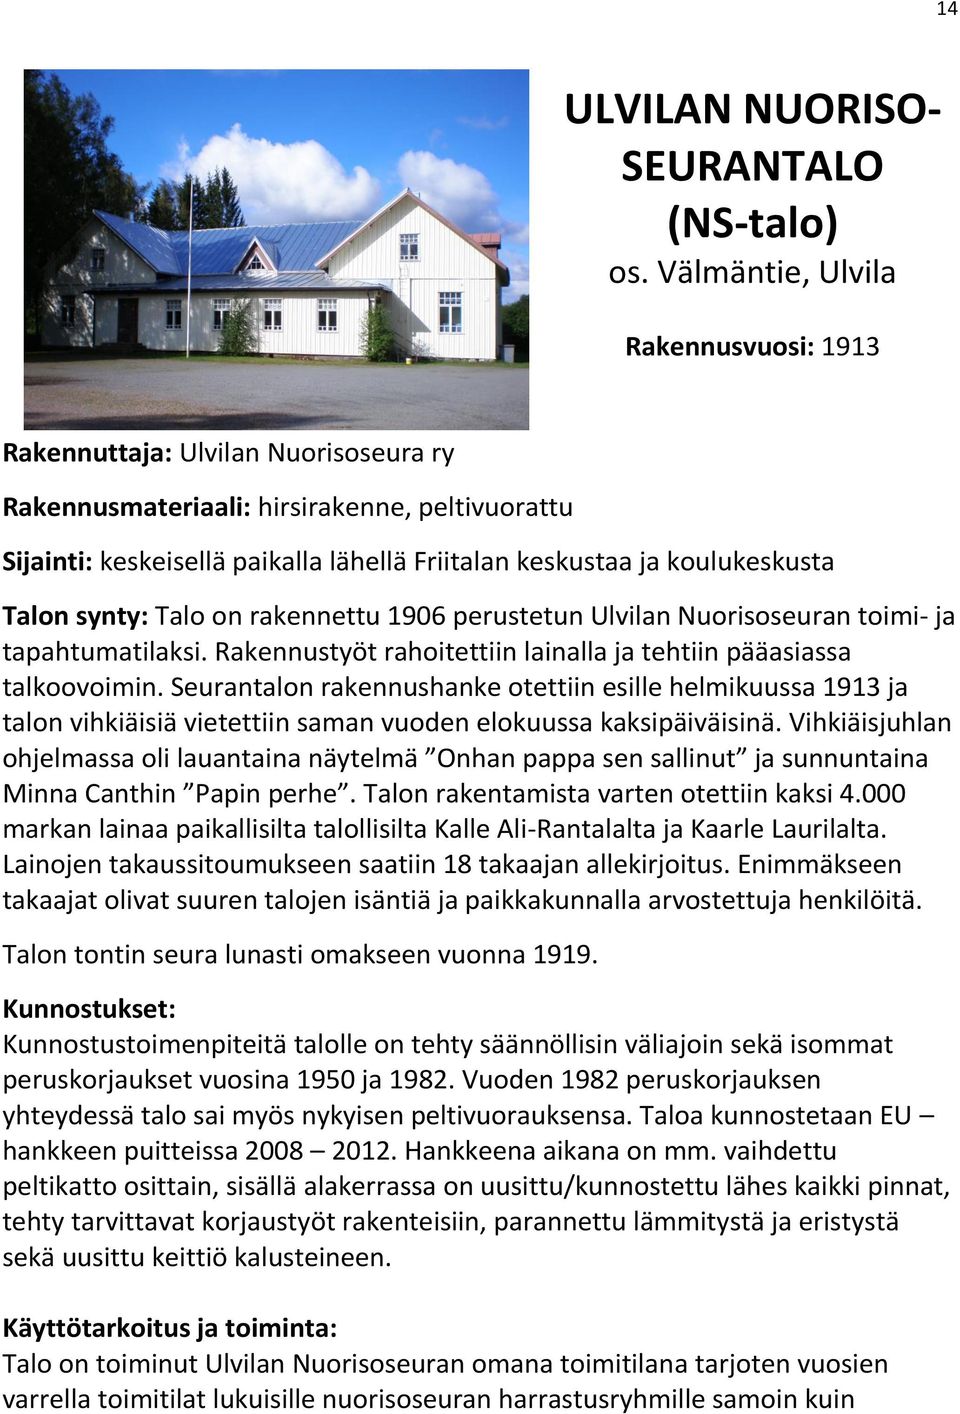 Talon synty: Talo on rakennettu 1906 perustetun Ulvilan Nuorisoseuran toimi- ja tapahtumatilaksi. Rakennustyöt rahoitettiin lainalla ja tehtiin pääasiassa talkoovoimin.